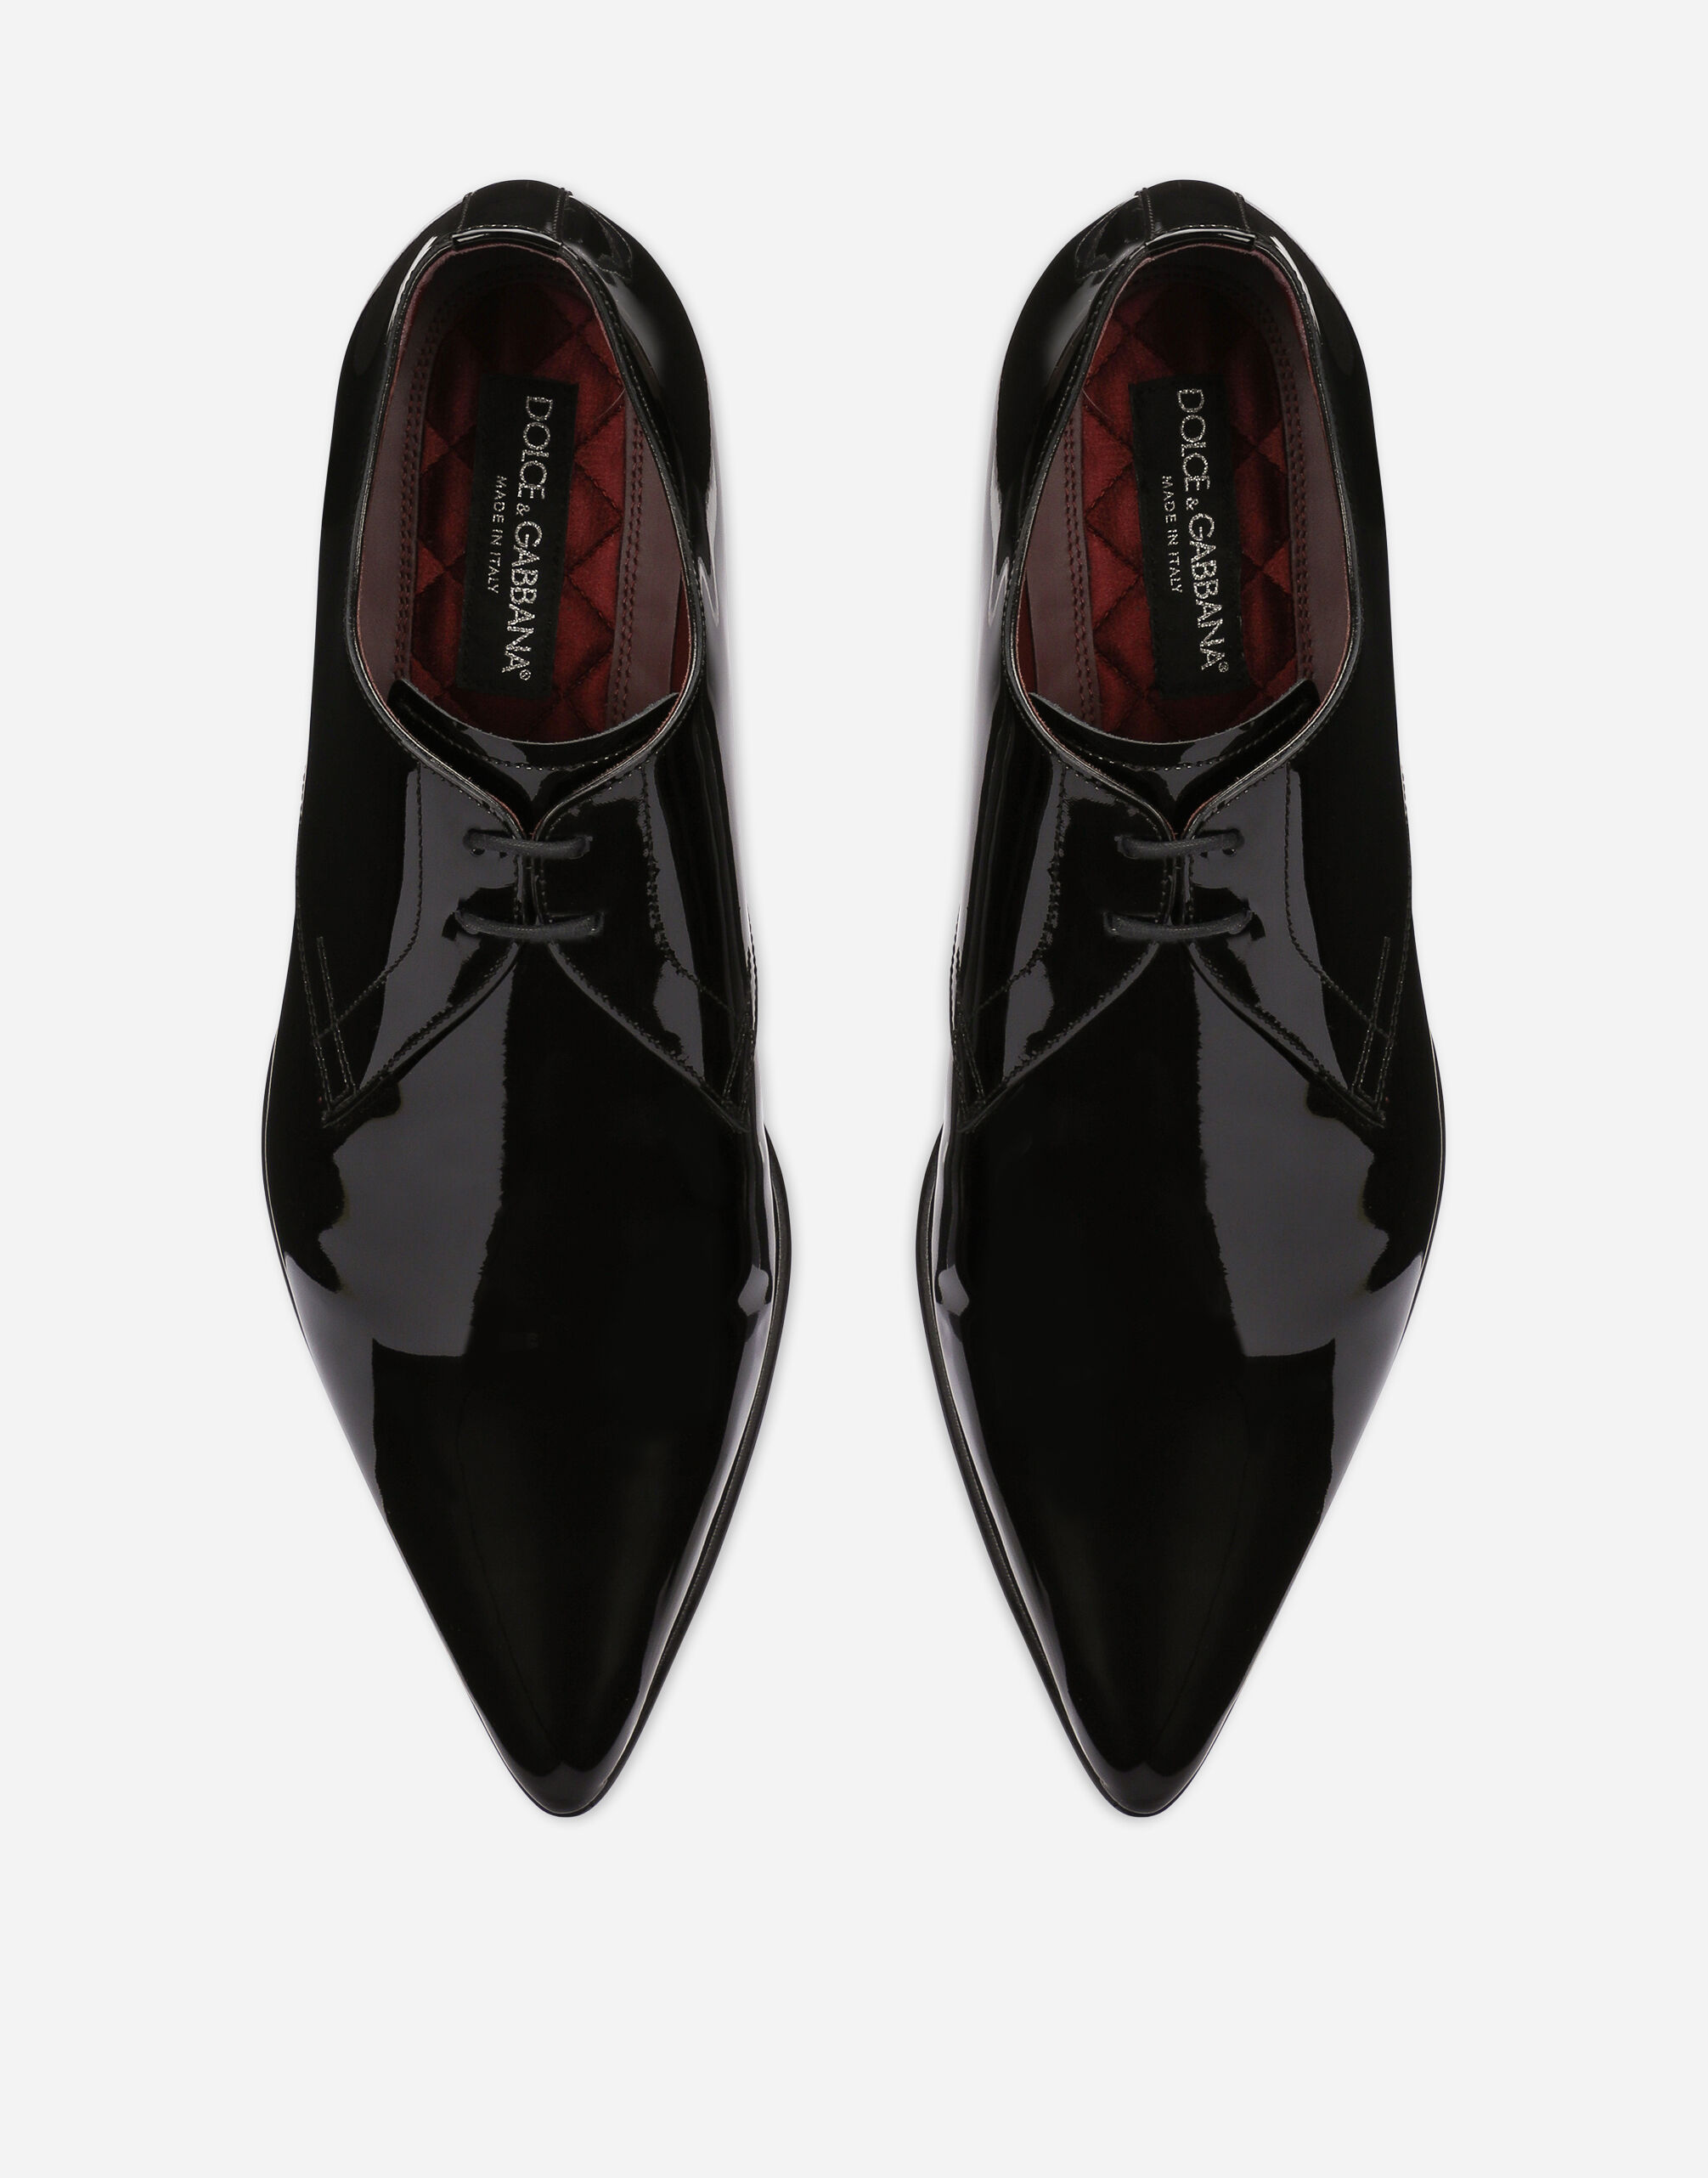 DOLCE &GABBANA ドルガバ 革靴 27-27.5cm UK8.5 - ドレス/ビジネス